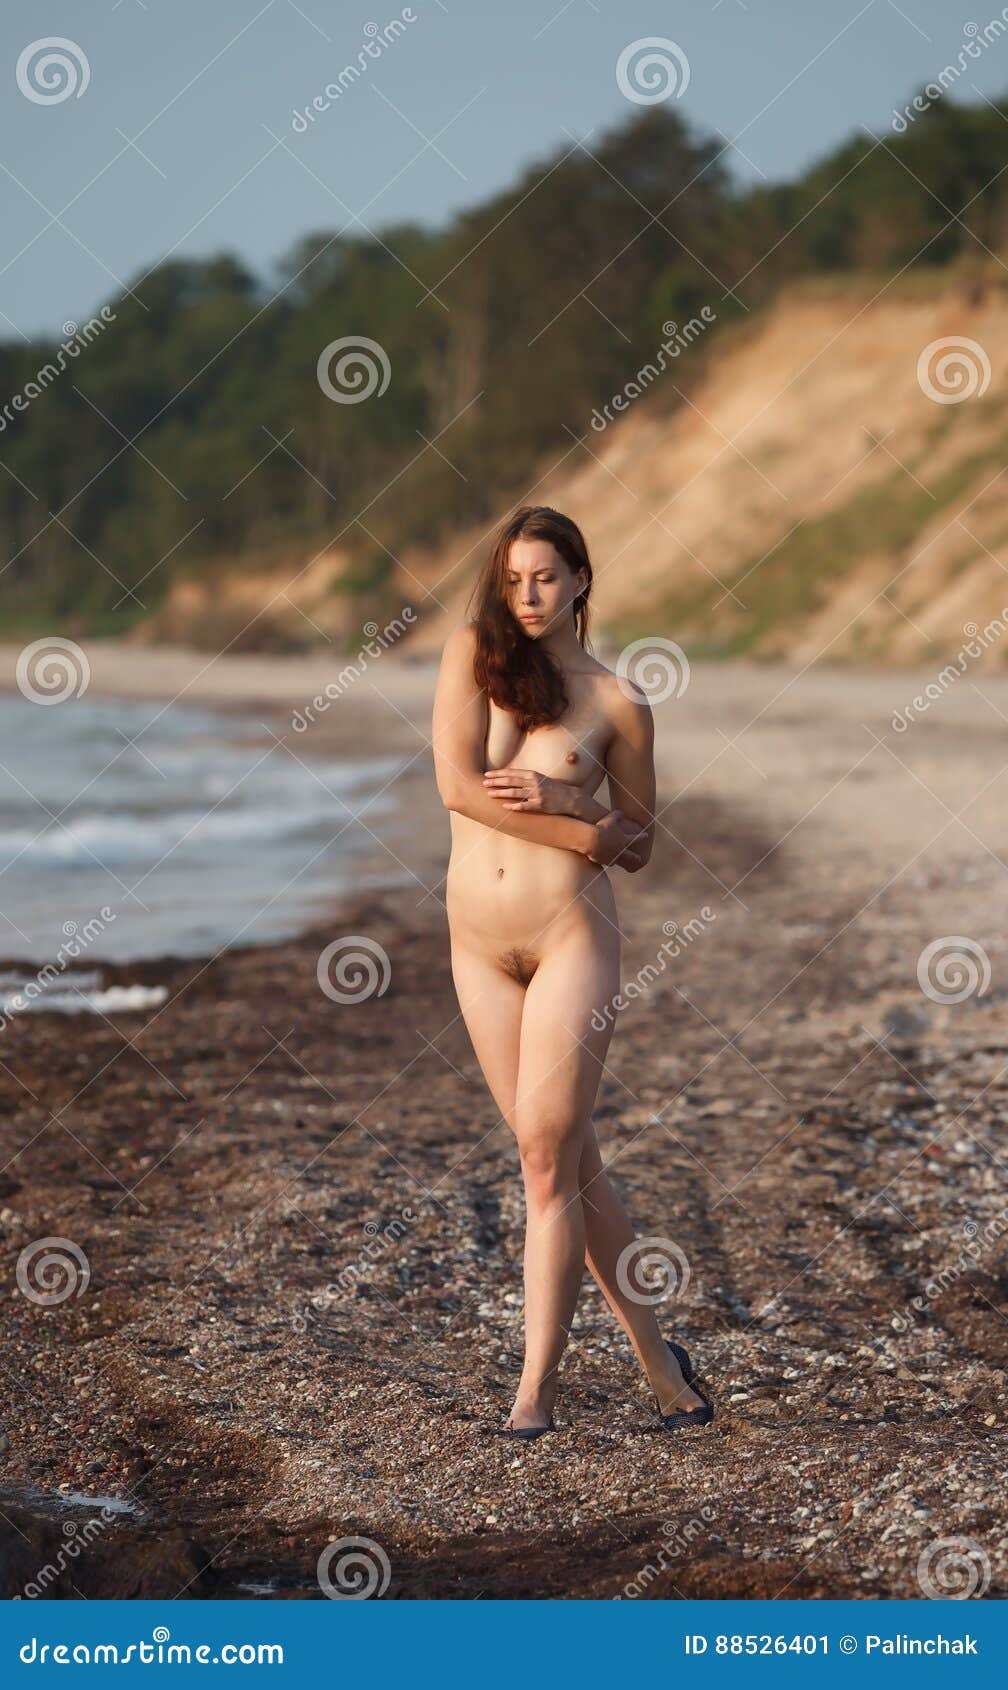 buddy kuykendall share beautiful naked women outside photos